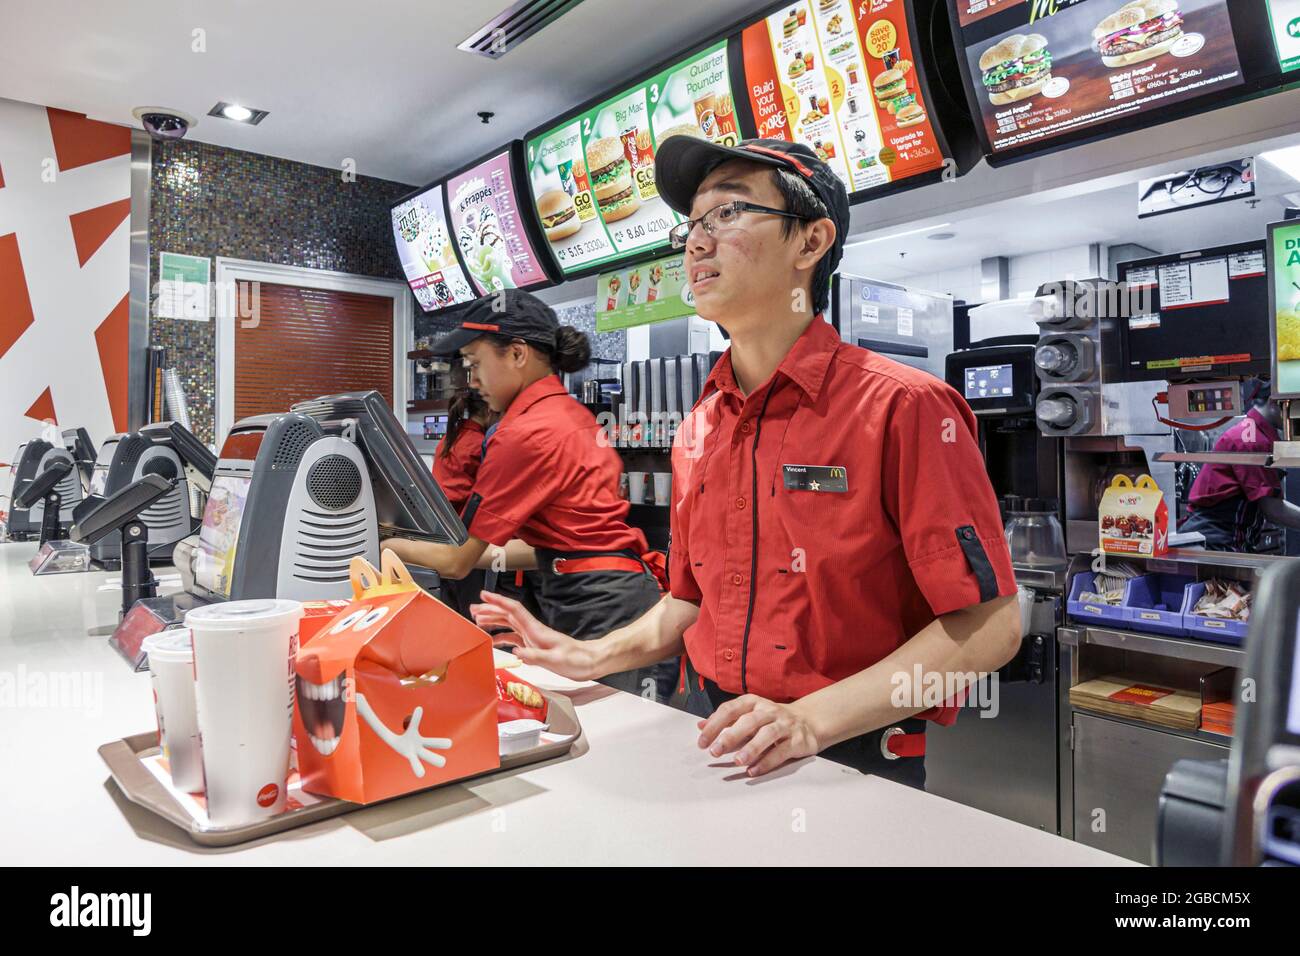 Sydney Australien, CBD Circular Quay, McDonald's Restaurant Fast-Food-Theke mit Tablett, asiatischer Mitarbeiter, der arbeitet, Stockfoto